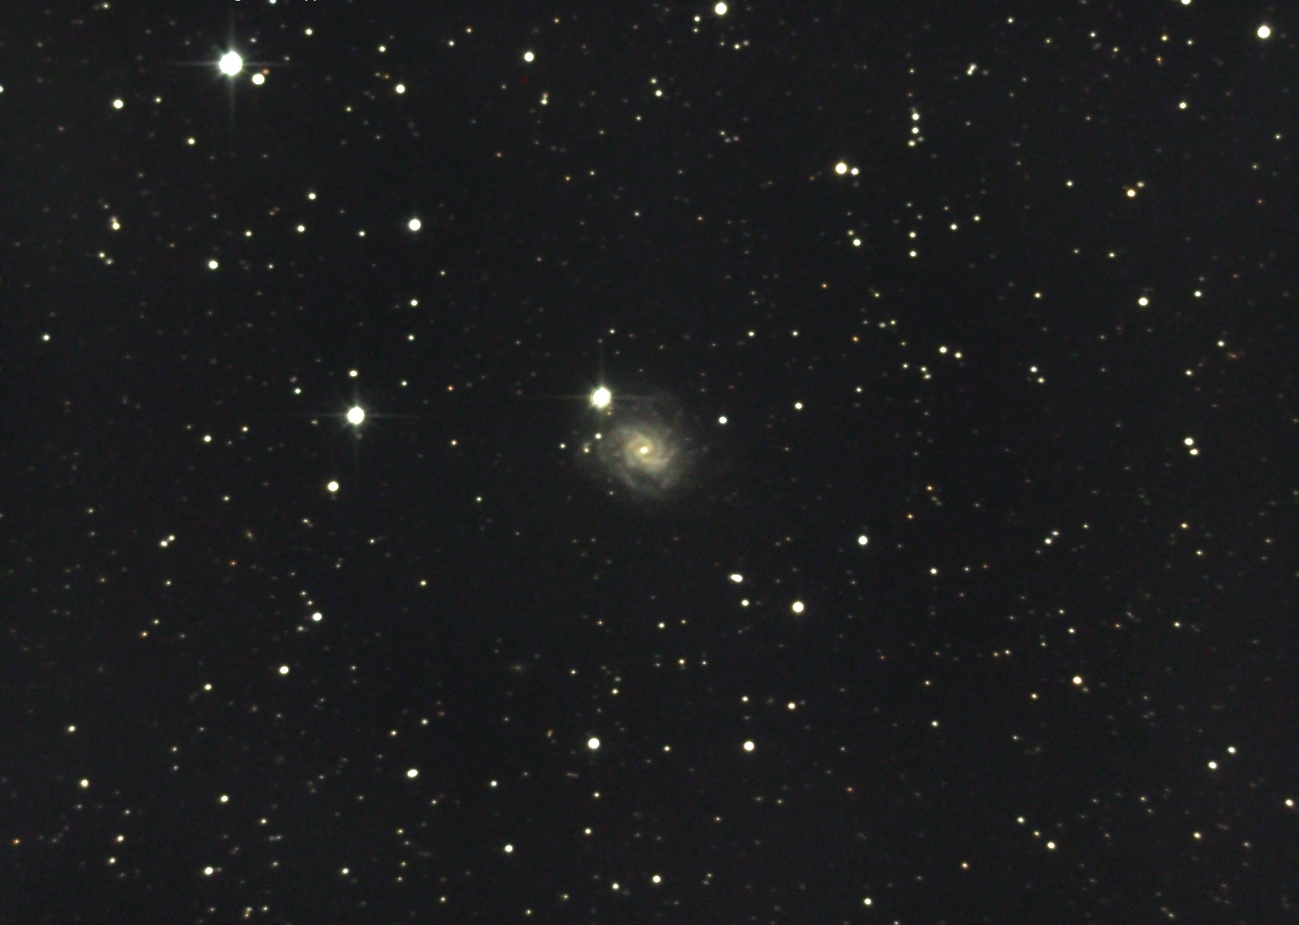 NGC 5885